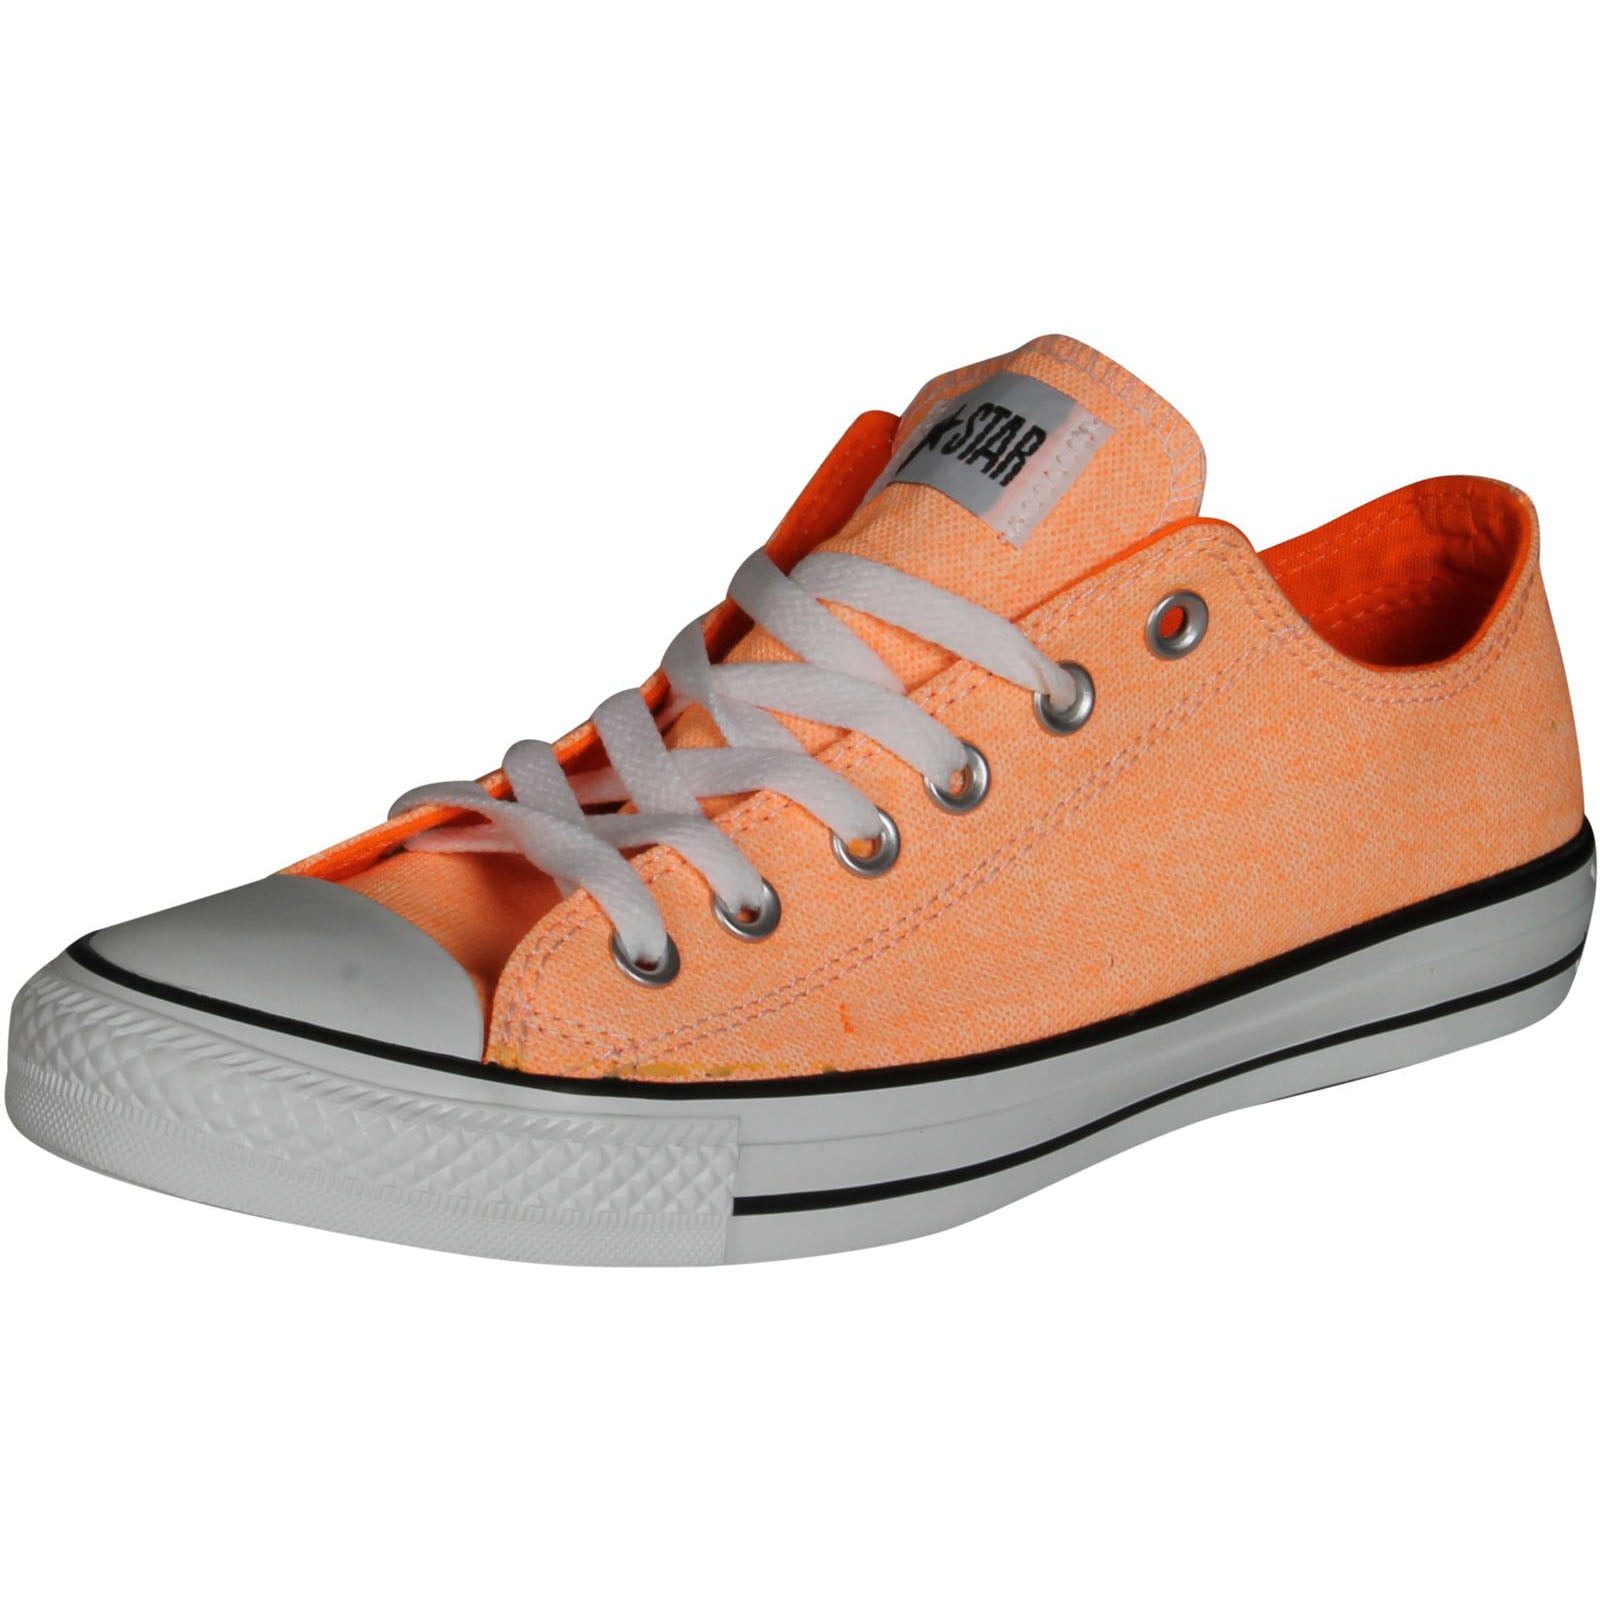 Converse Chuck Taylor Sneakers, Neon Orange, 7 - Walmart.com